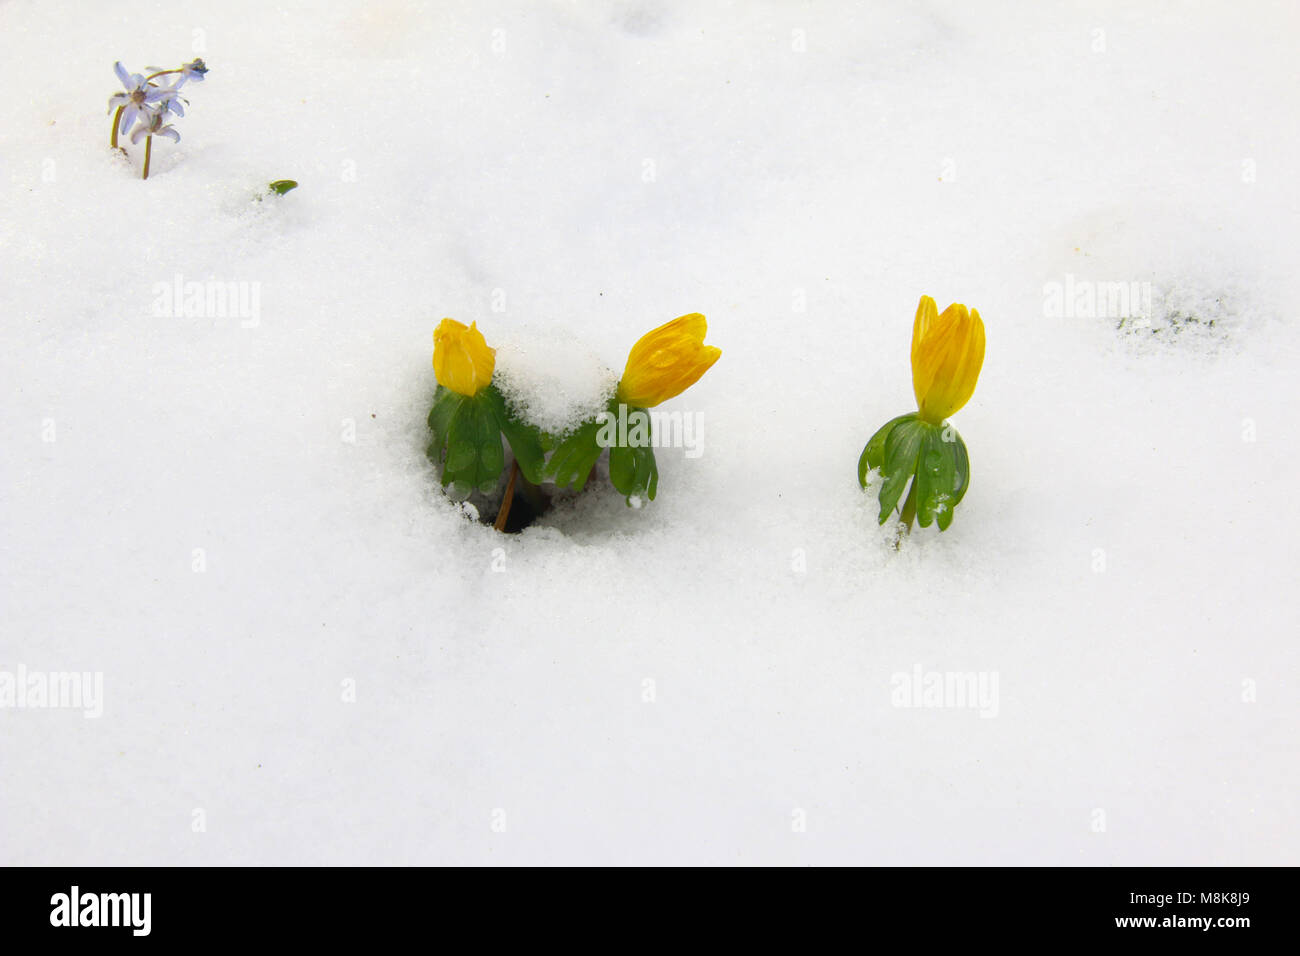 Dettaglio della fioritura aconitum invernale sulla neve Foto Stock